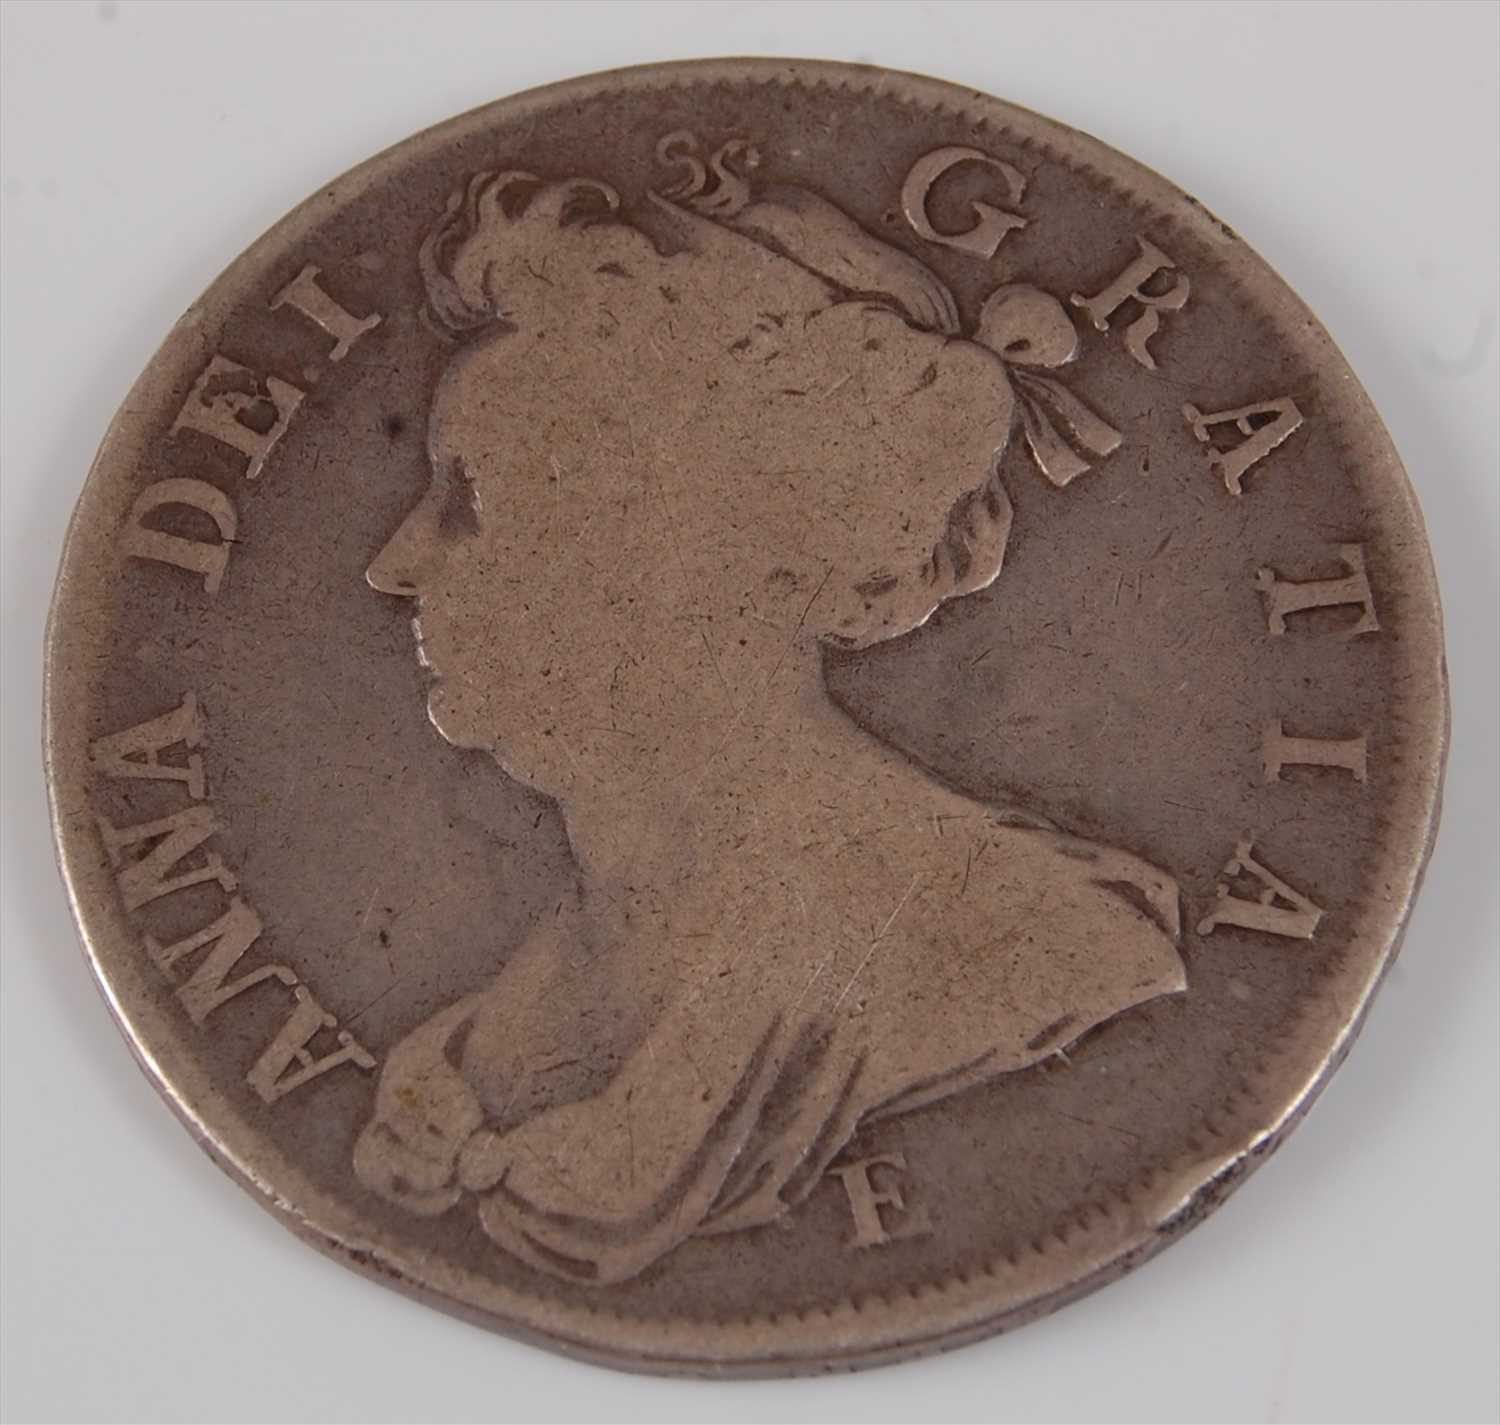 Lot 66 - Great Britain, 1707 half crown